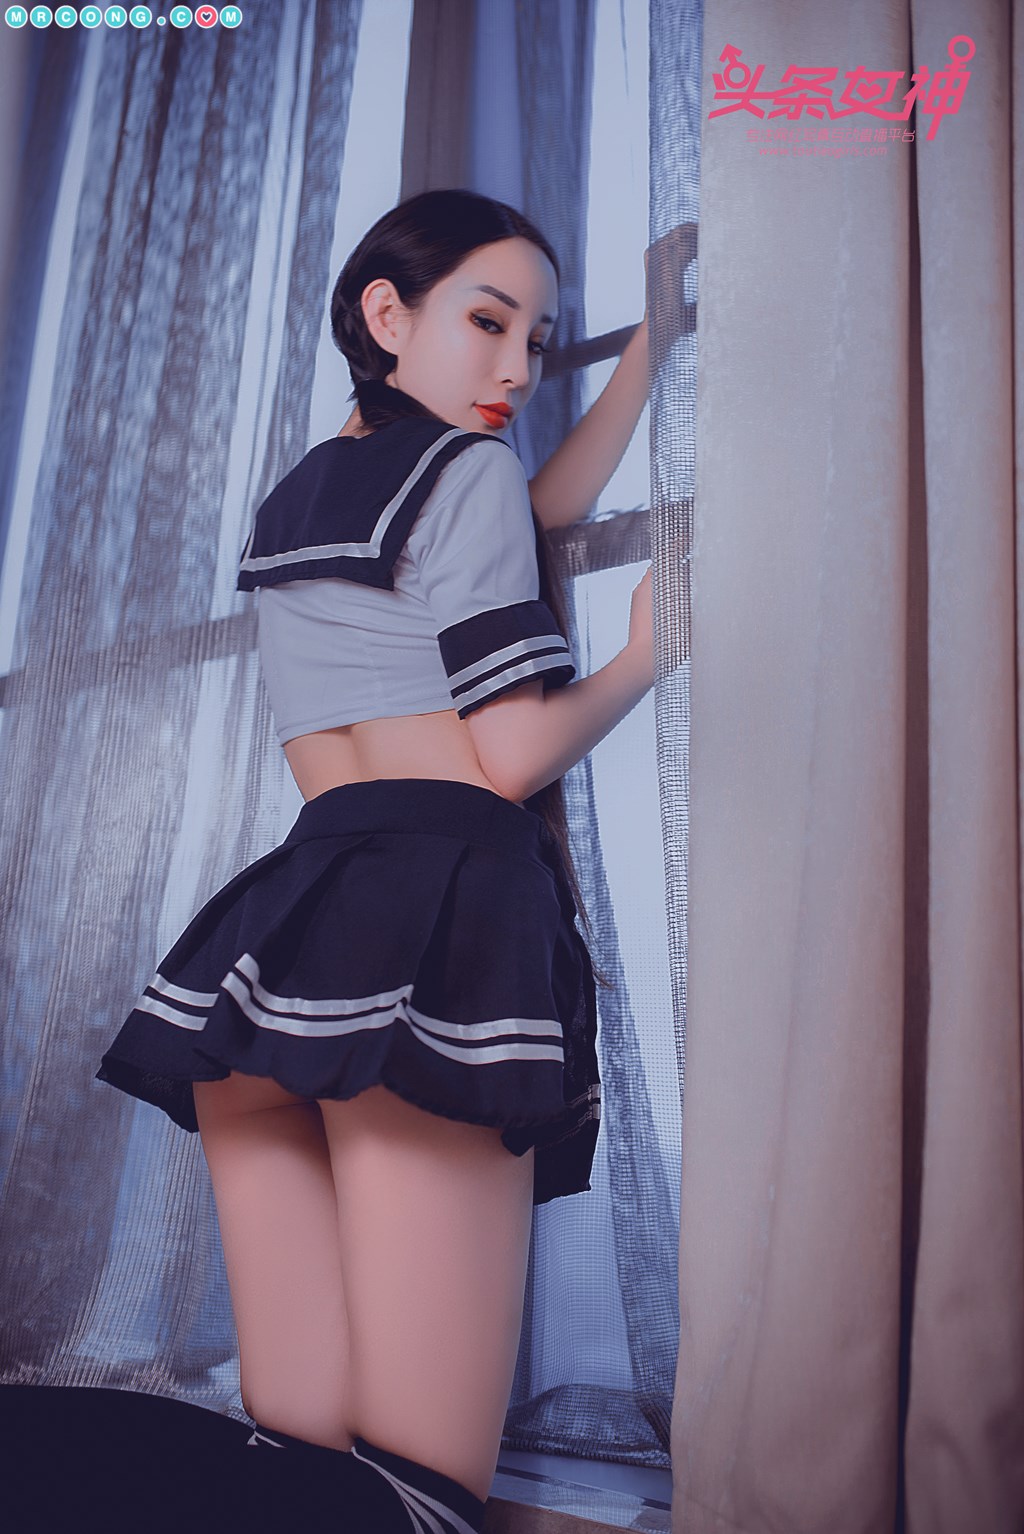 TouTiao 2018-05-13: Model Li Si Tong (李思彤) (21 photos) photo 1-8